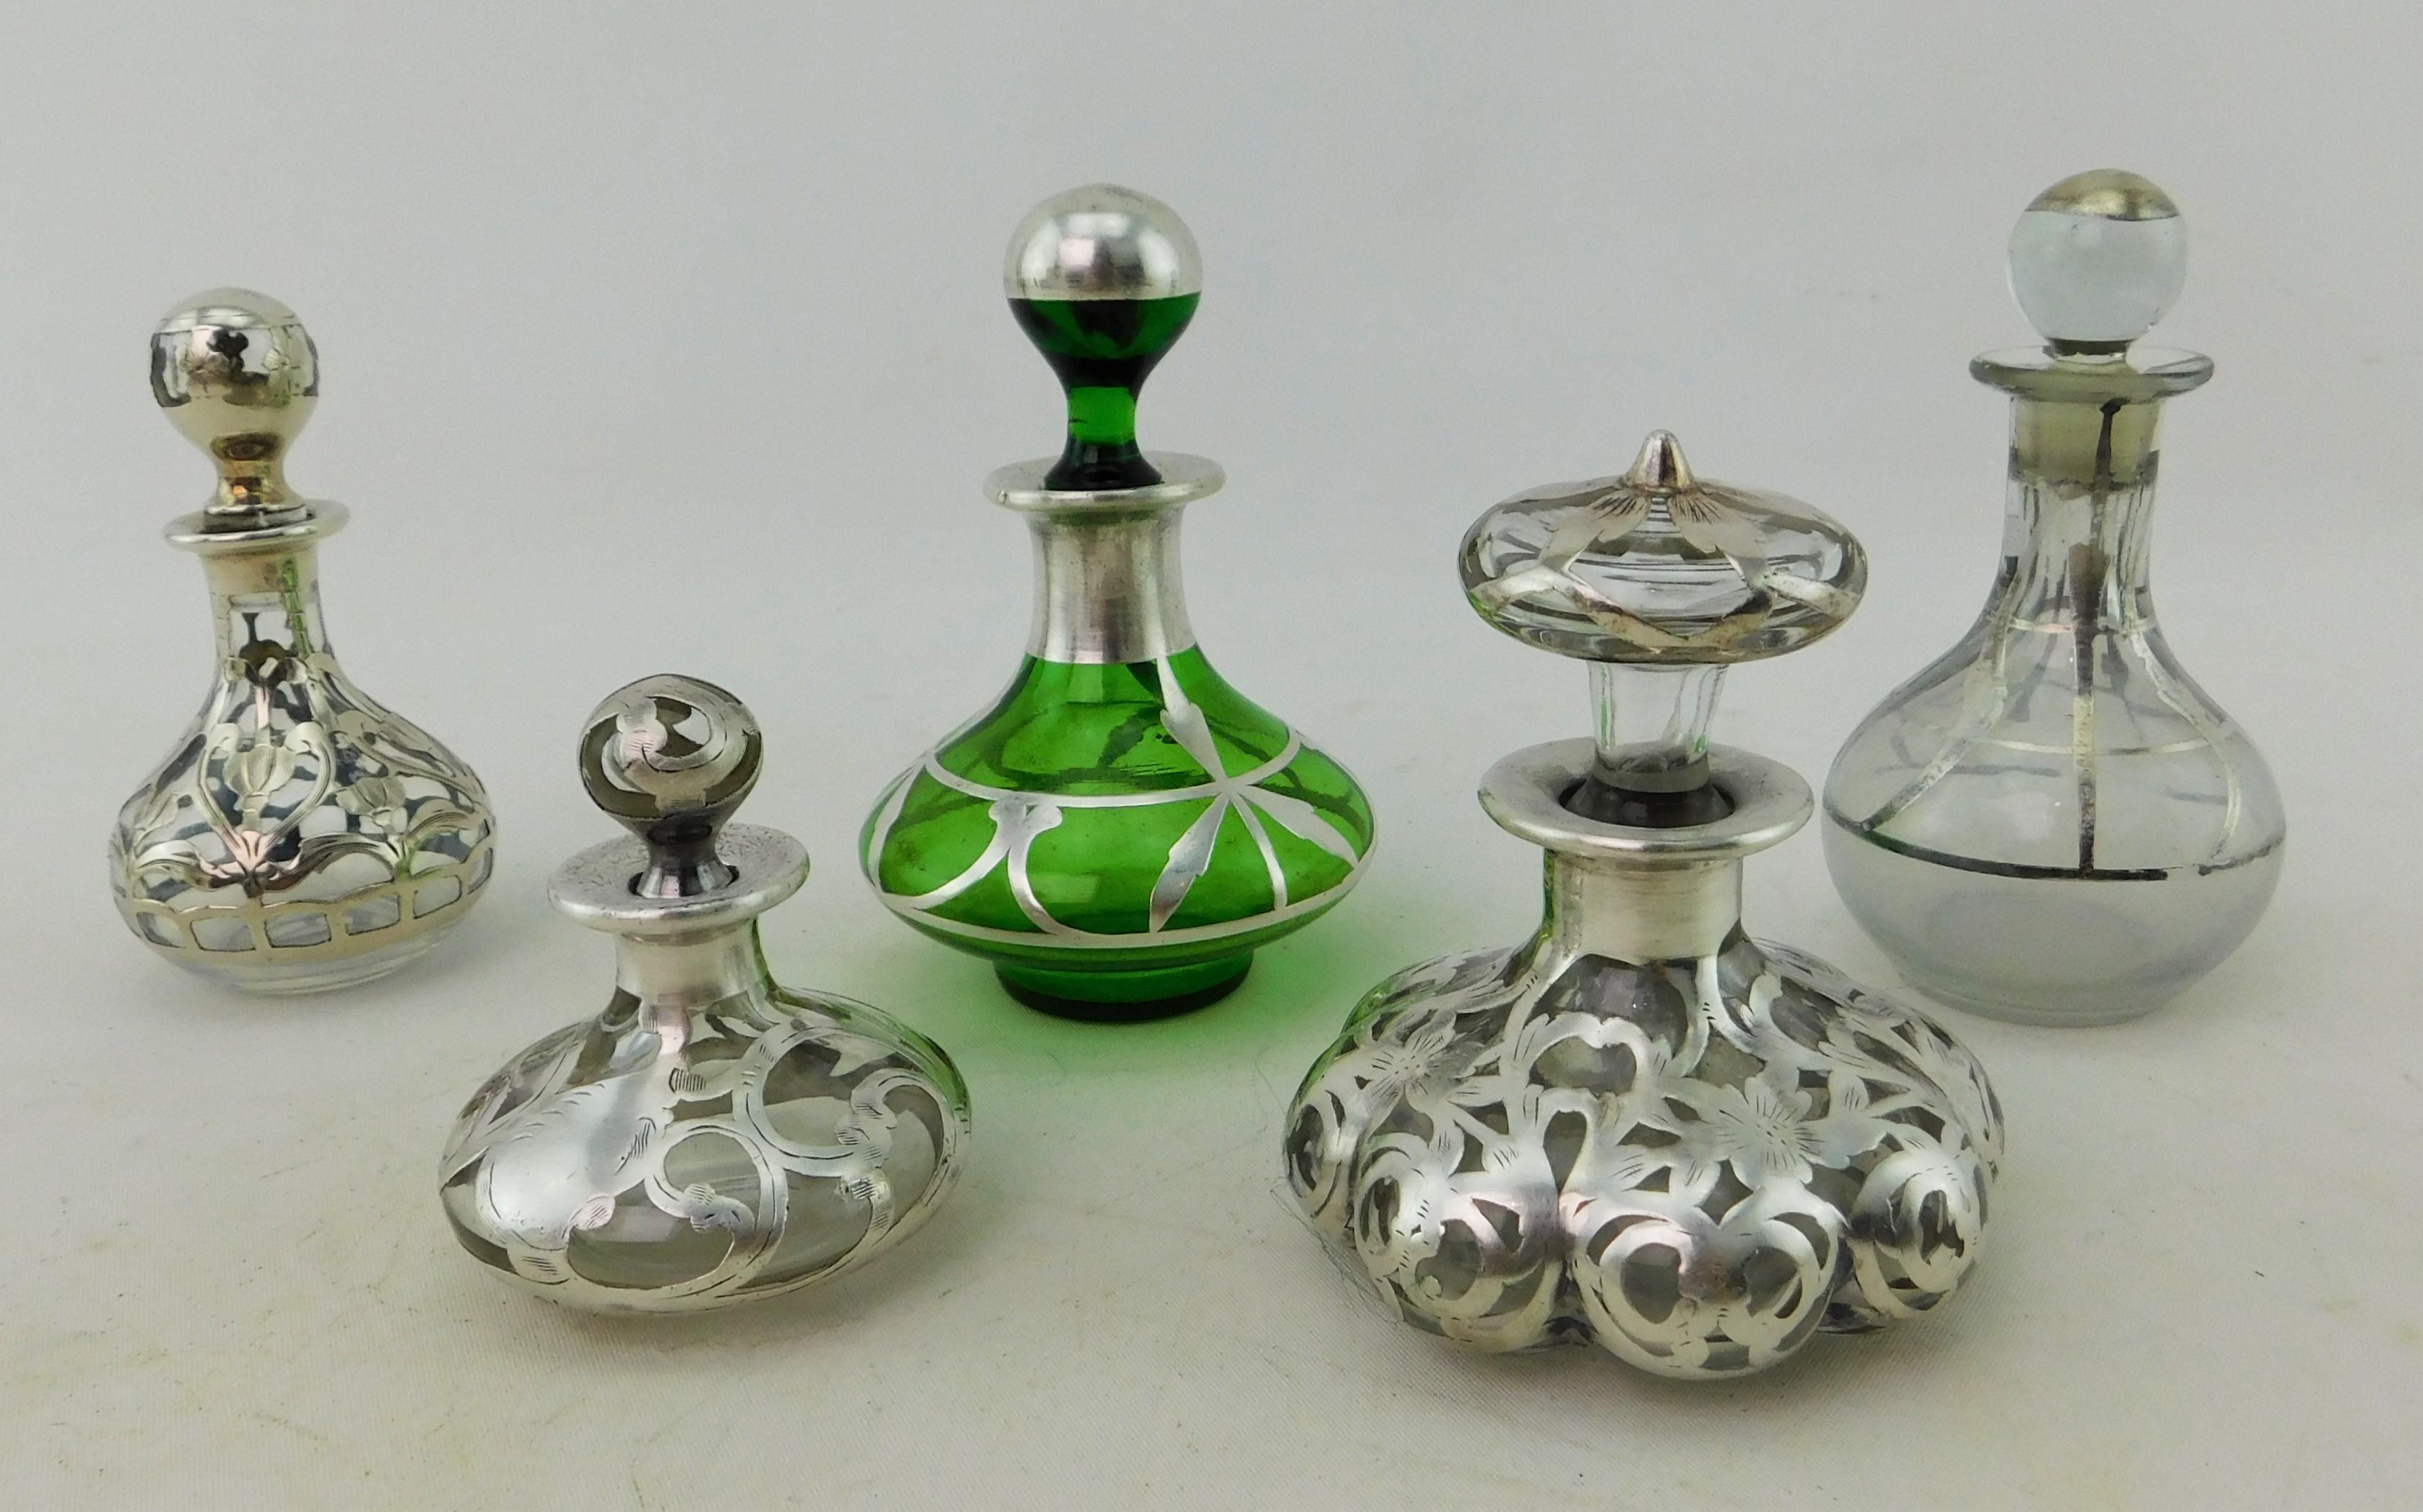 Fünf Jugendstil-Parfümflaschen um 1900 Silberauflage auf Glas 19. (Art nouveau)